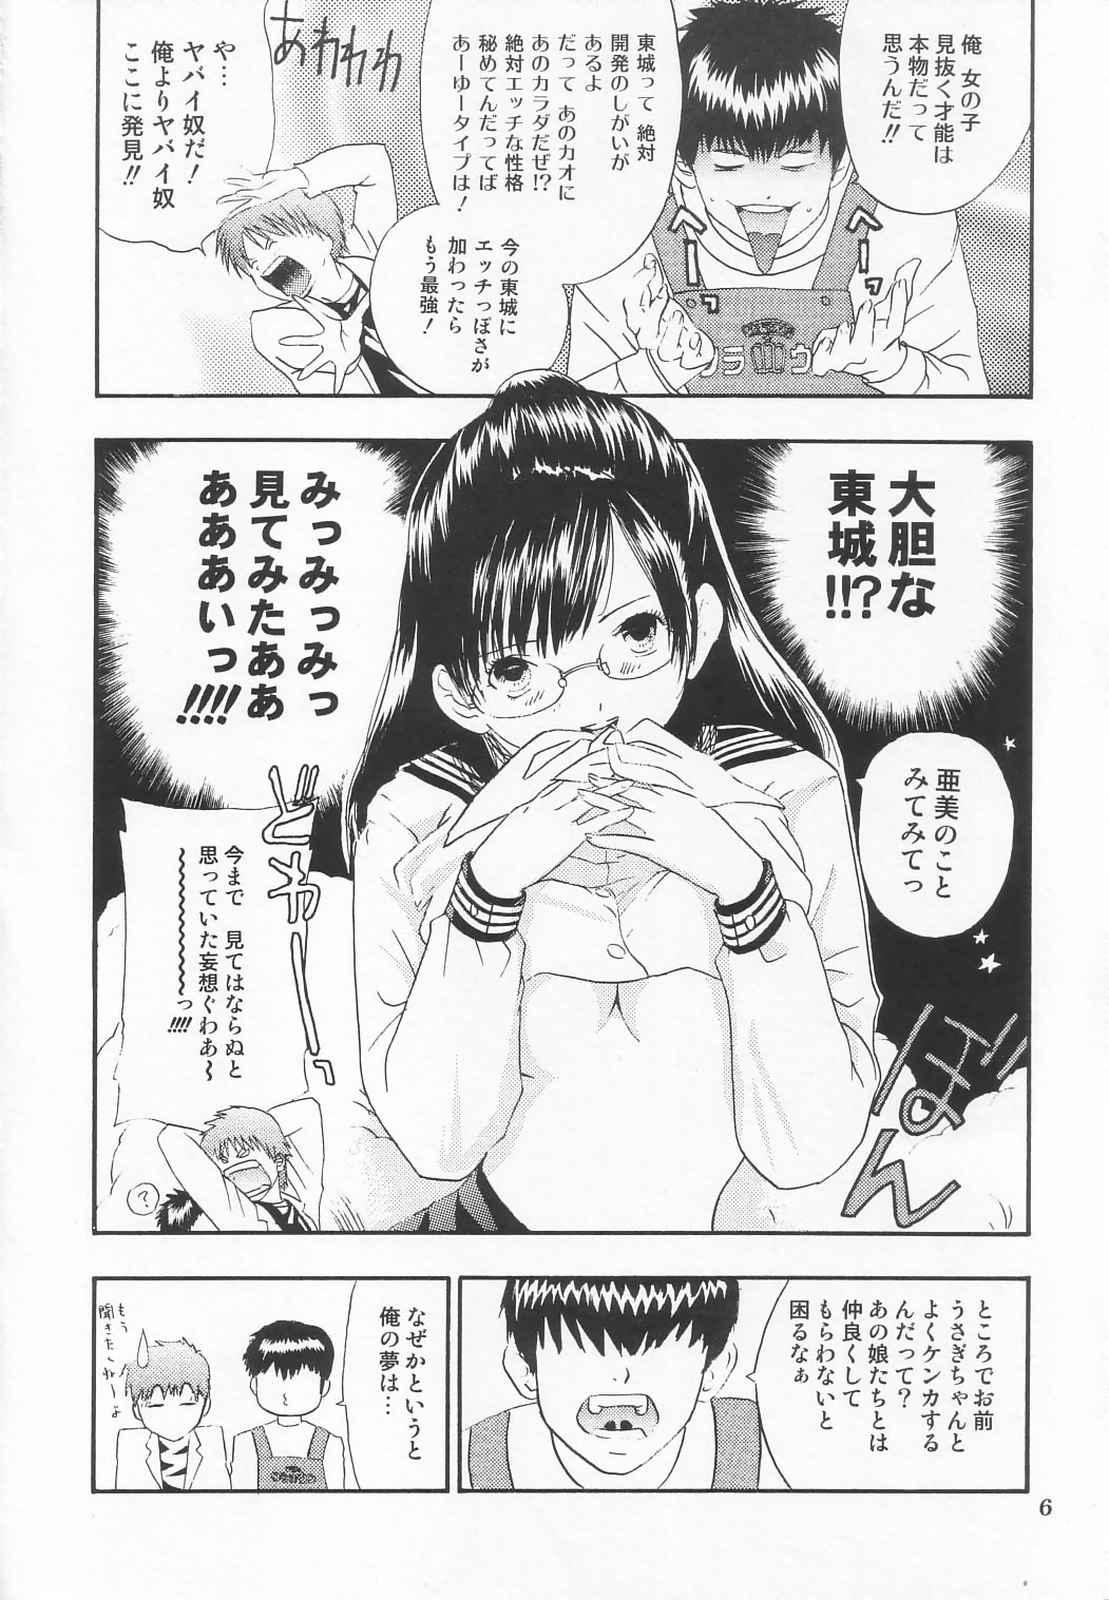 Show Tokusatsu Magazine x 2003 Fuyu Gou - Sailor moon Ichigo 100 Comedor - Page 8